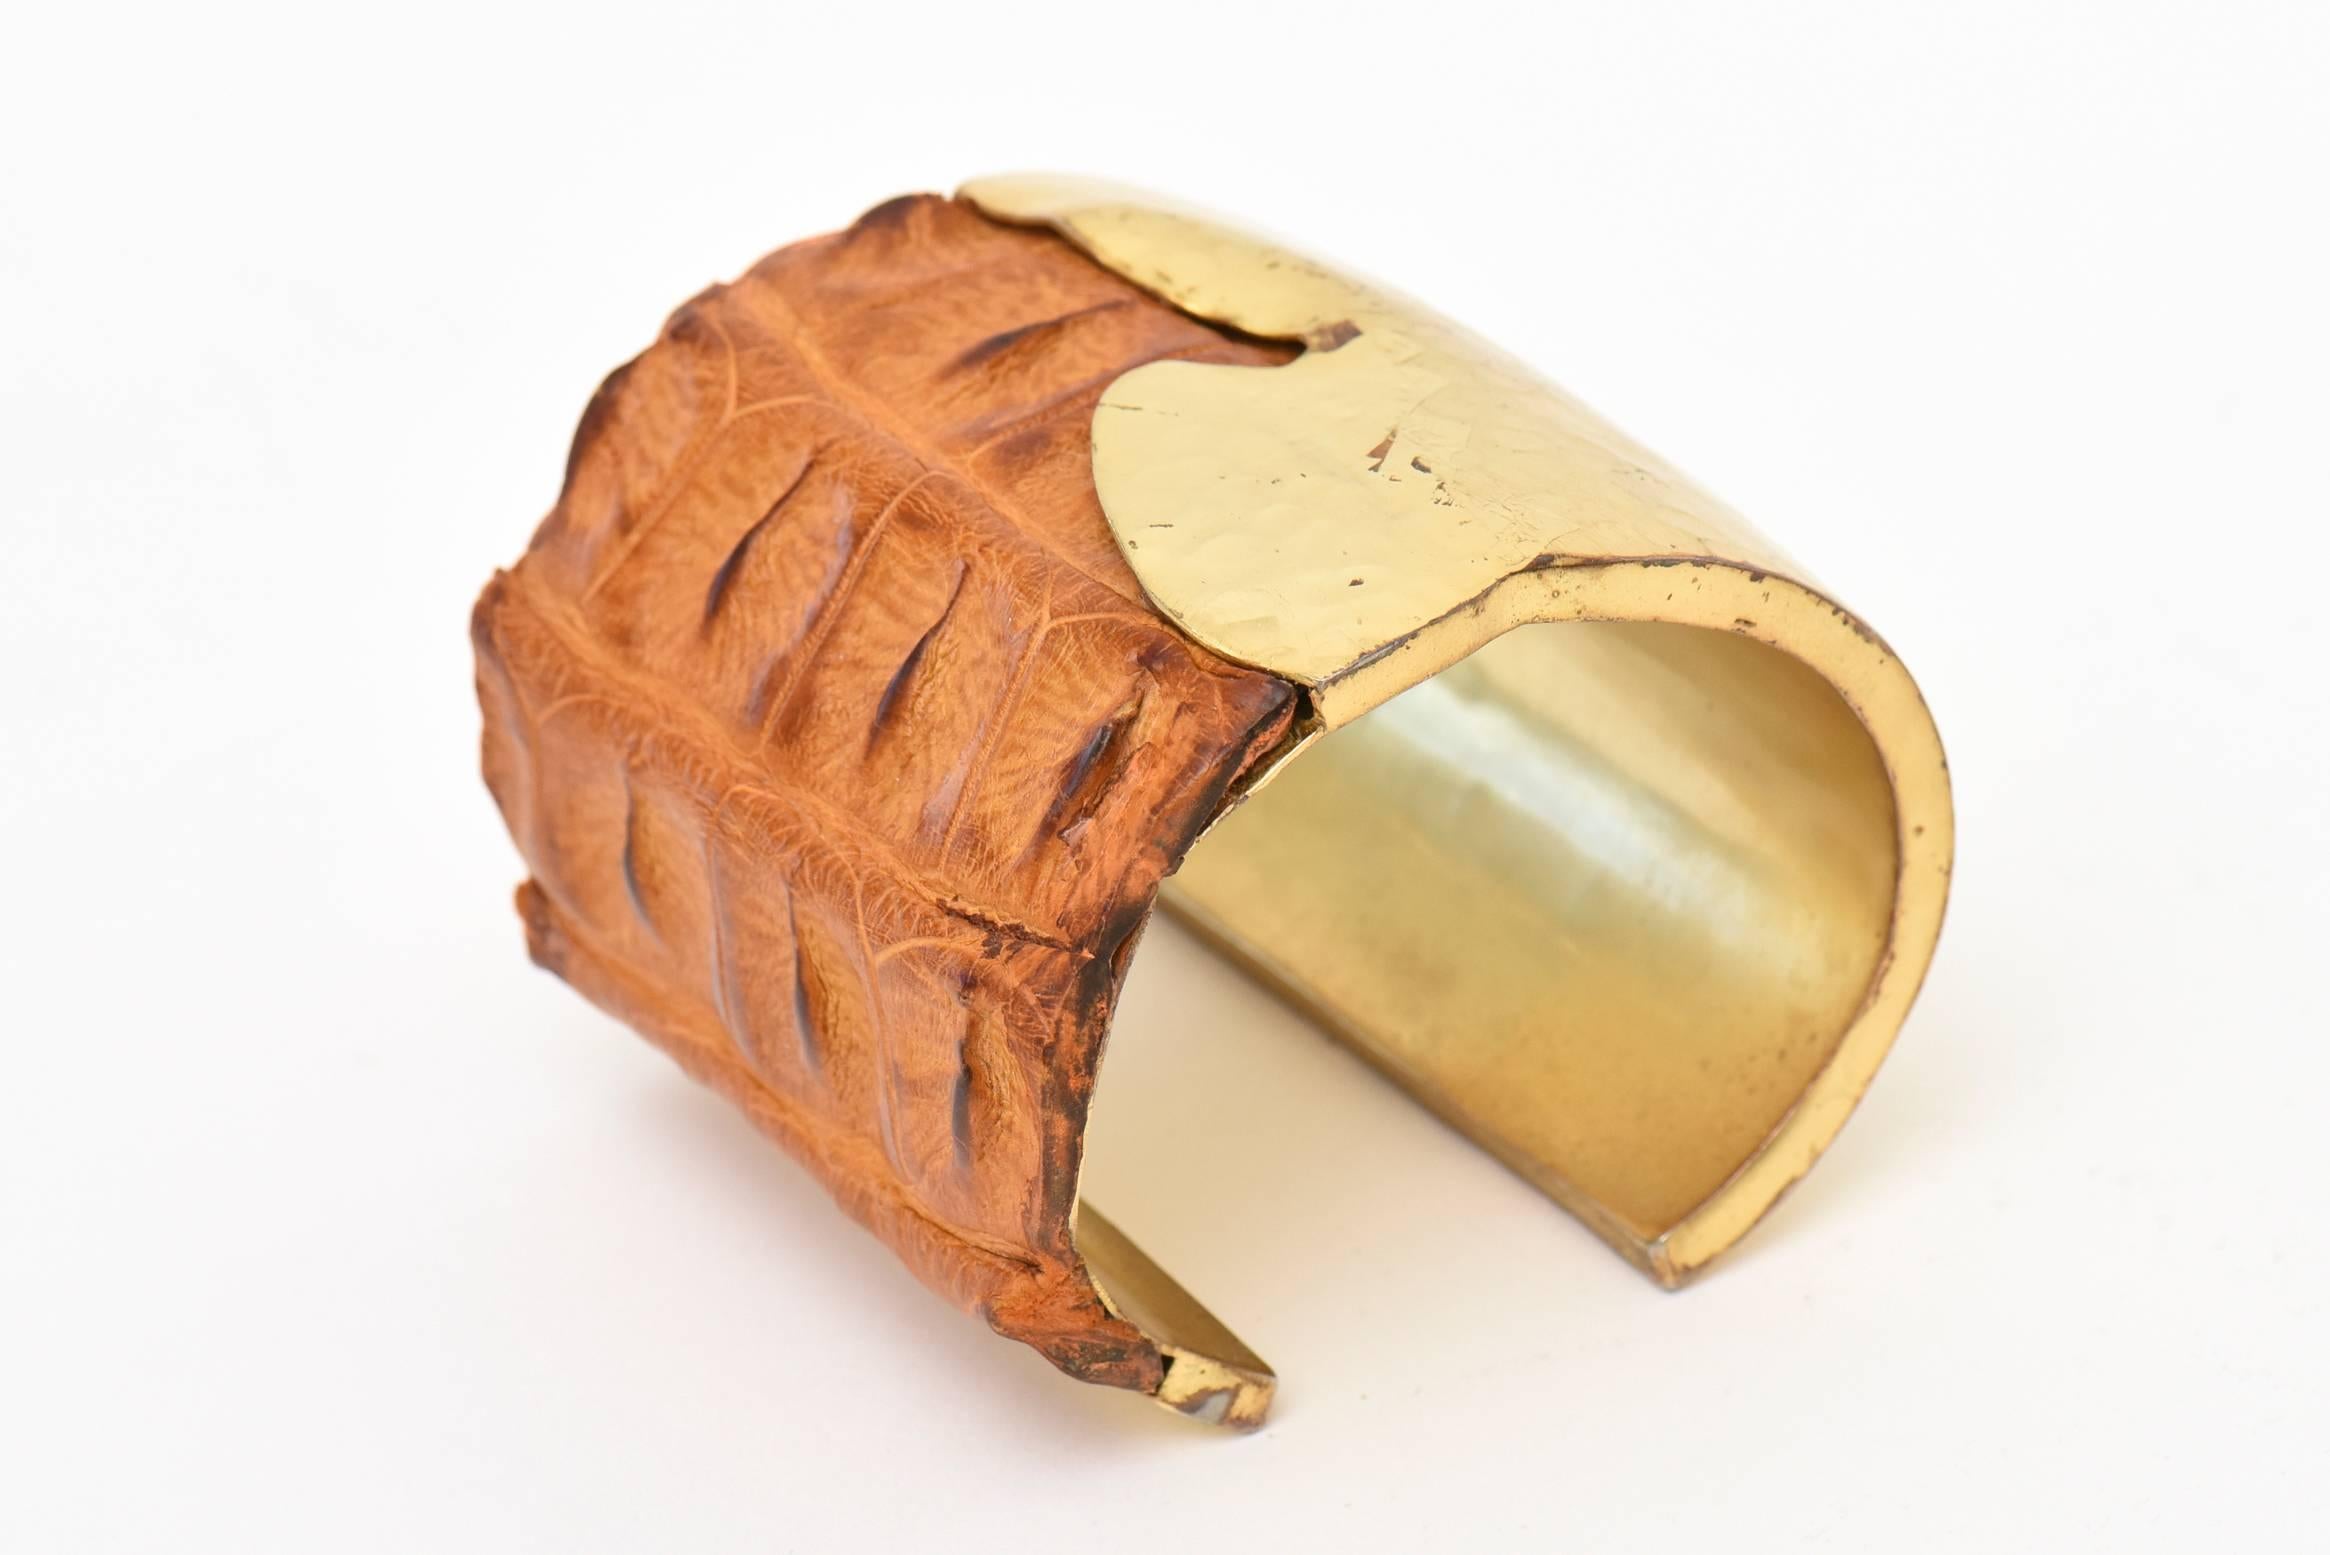 Ce bracelet large en laiton martelé à la main et en cuir de crocodile brun, signé du studio Nada Sawaya New York, est très sculptural. Il est magnifique au poignet. Le bracelet manchette mesure 2,25